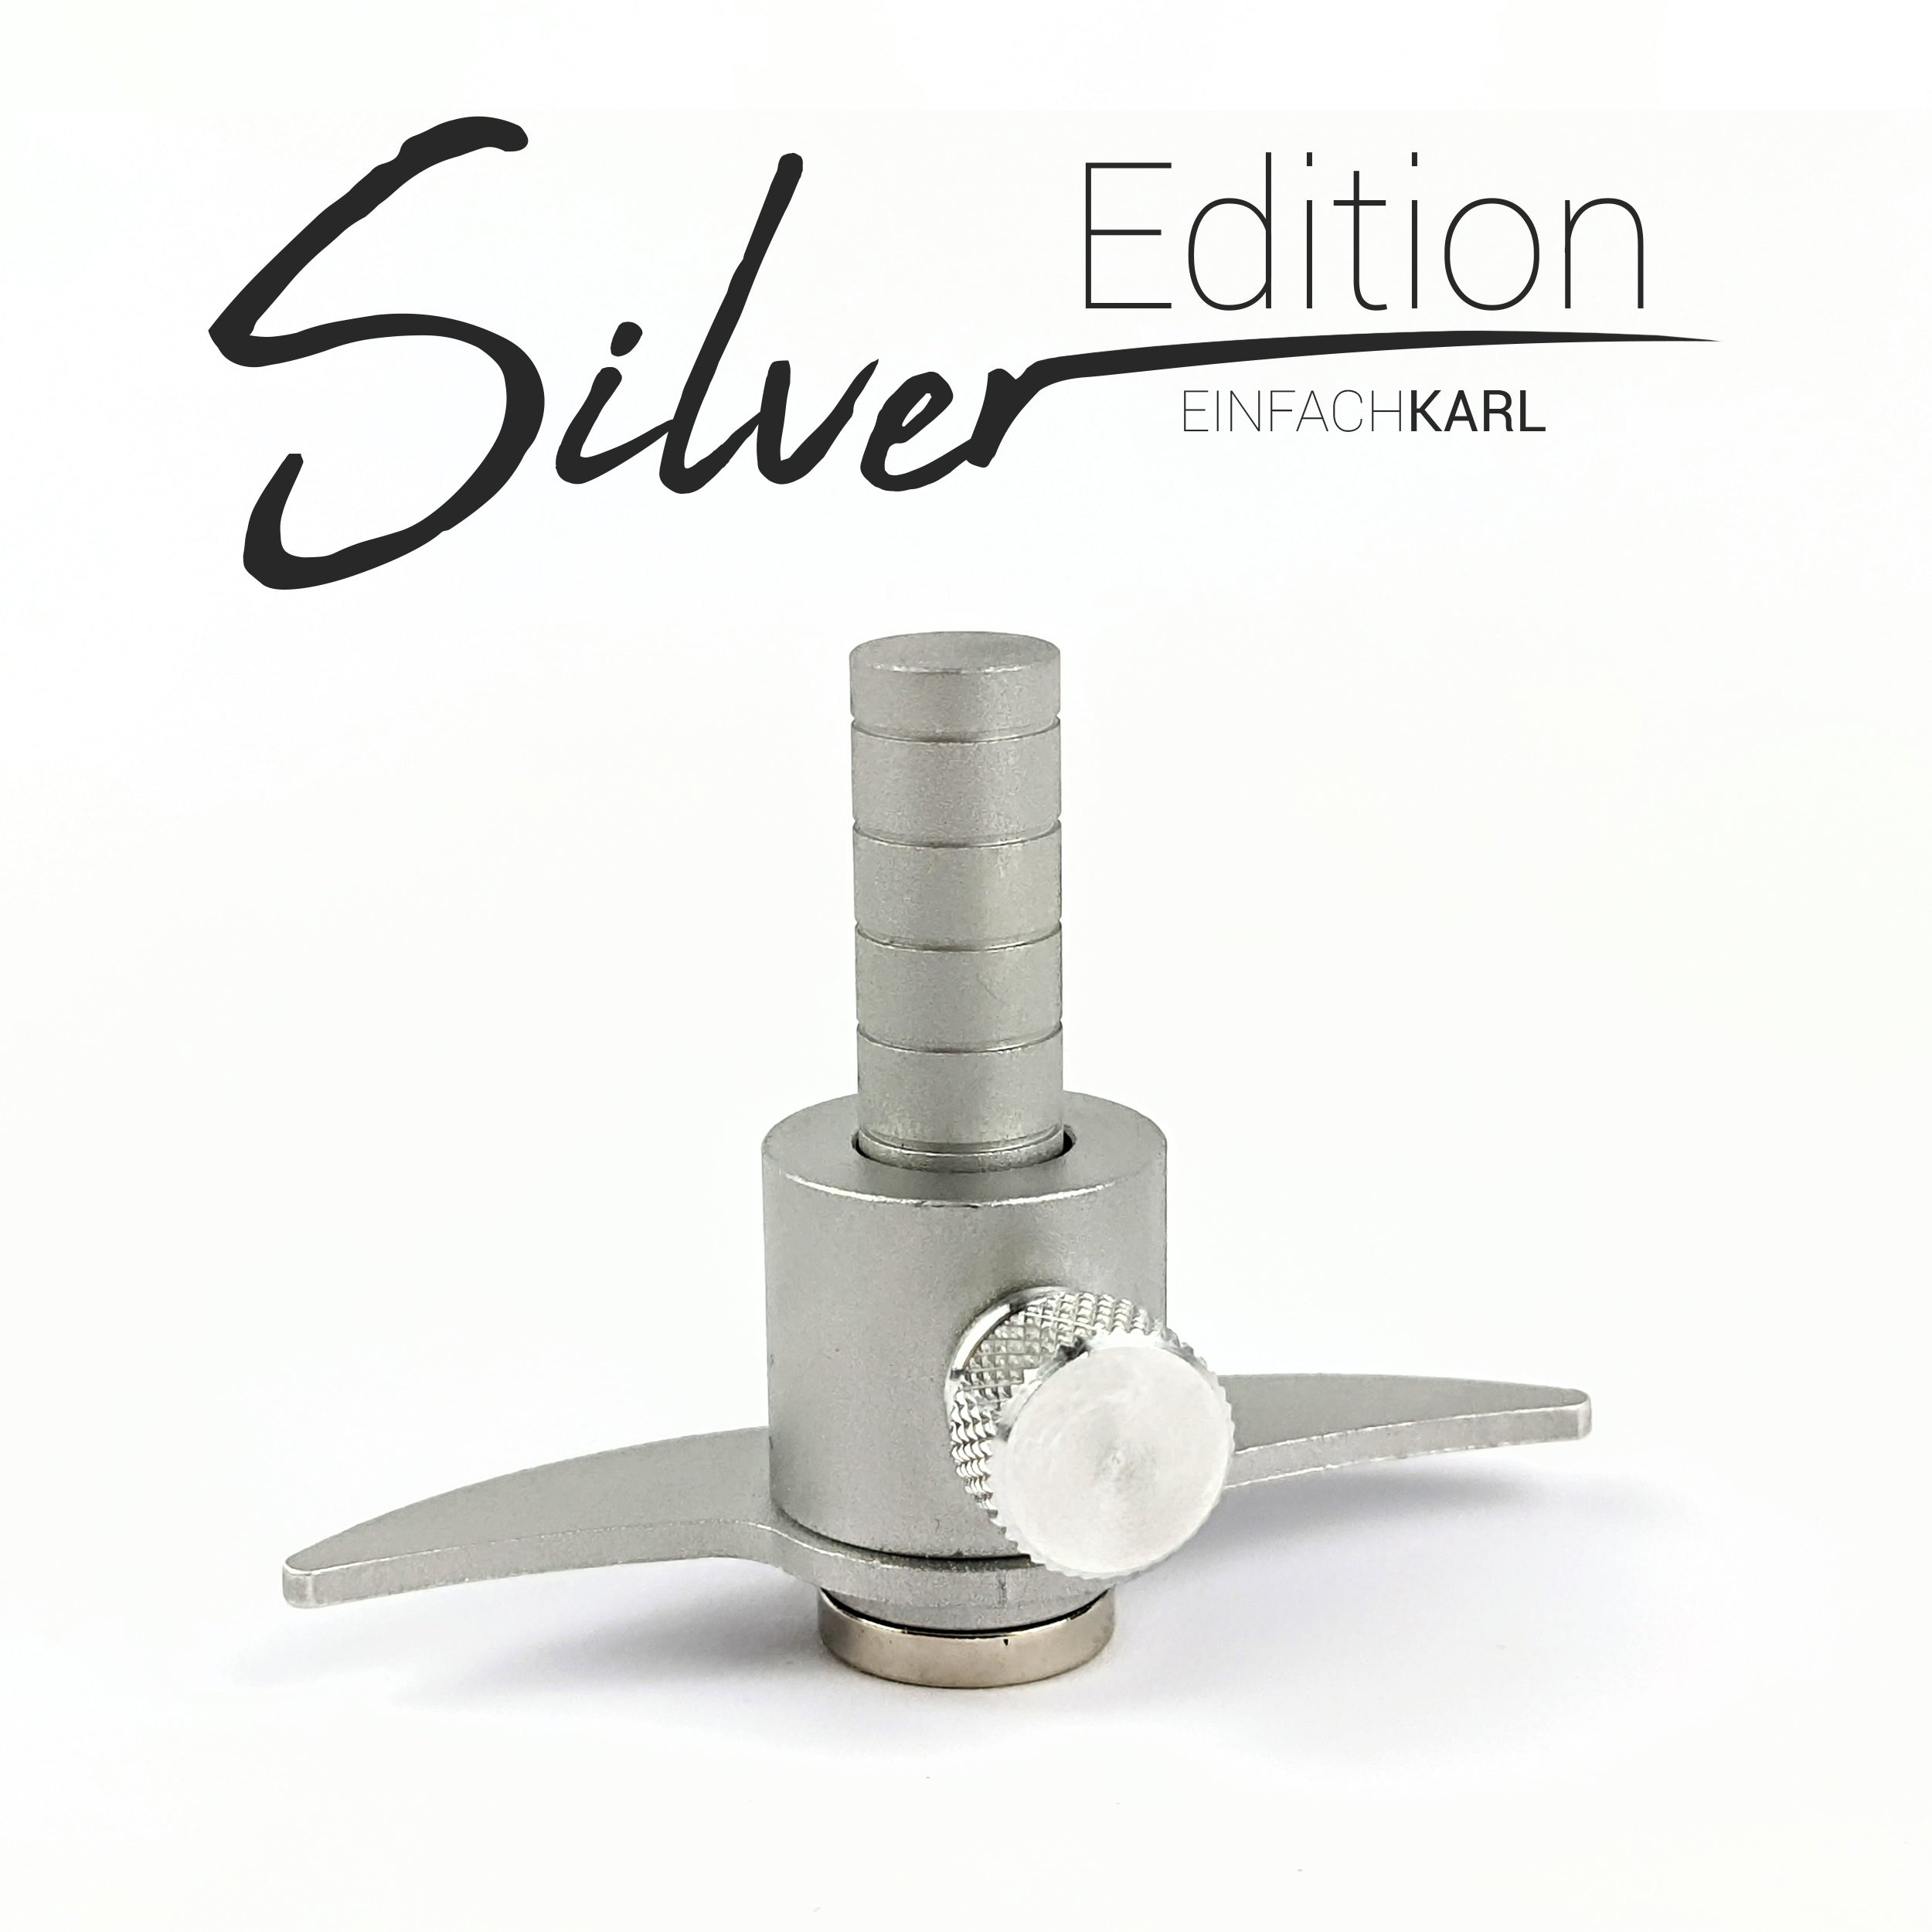 Karlchen (Silver Edition)